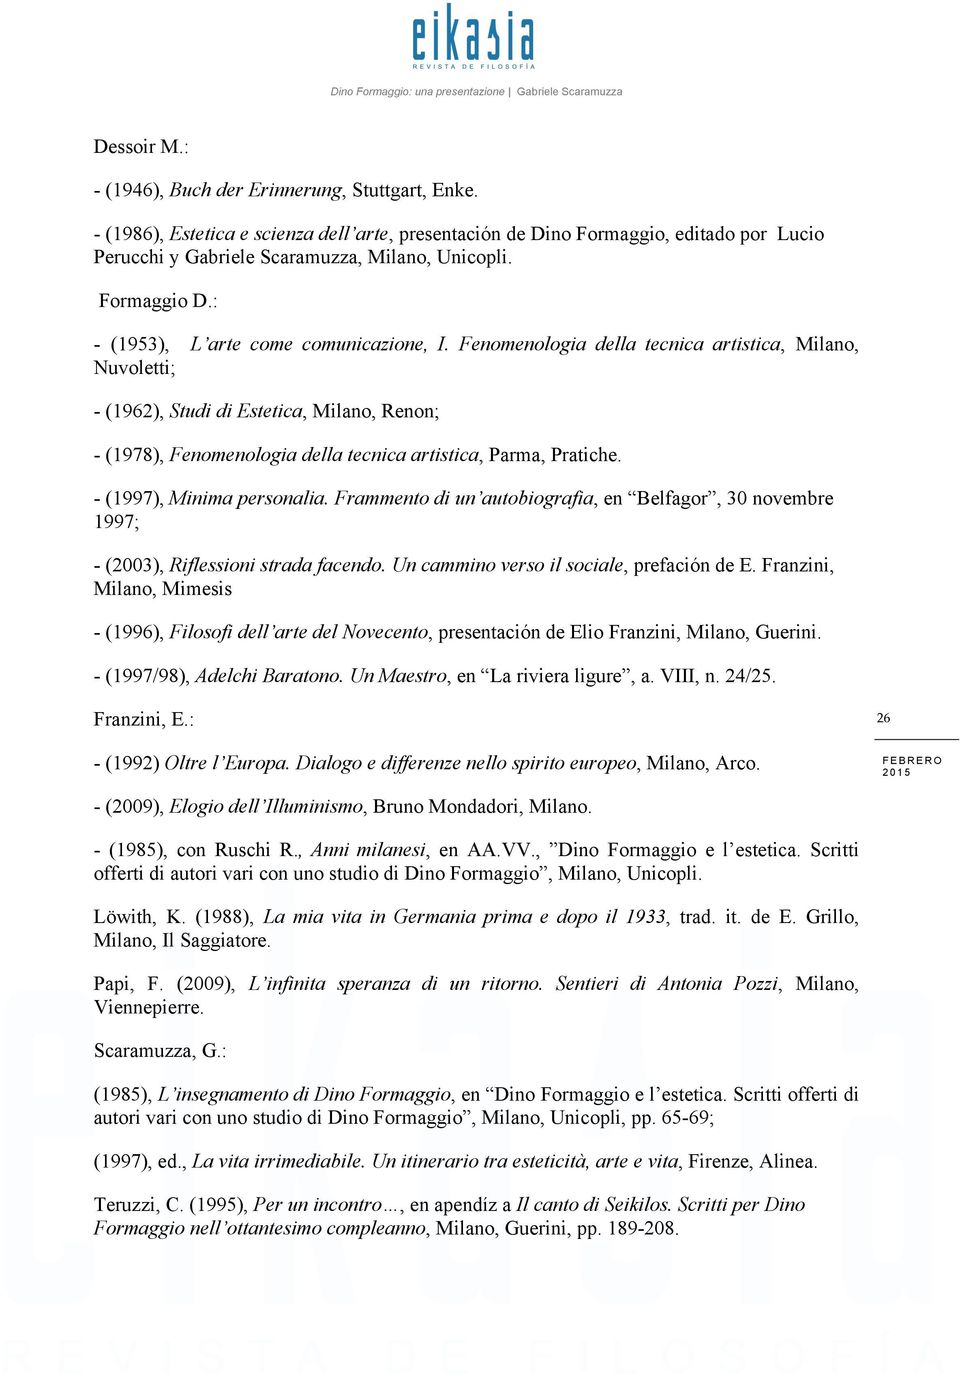 Fenomenologia della tecnica artistica, Milano, Nuvoletti; - (1962), Studi di Estetica, Milano, Renon; - (1978), Fenomenologia della tecnica artistica, Parma, Pratiche. - (1997), Minima personalia.